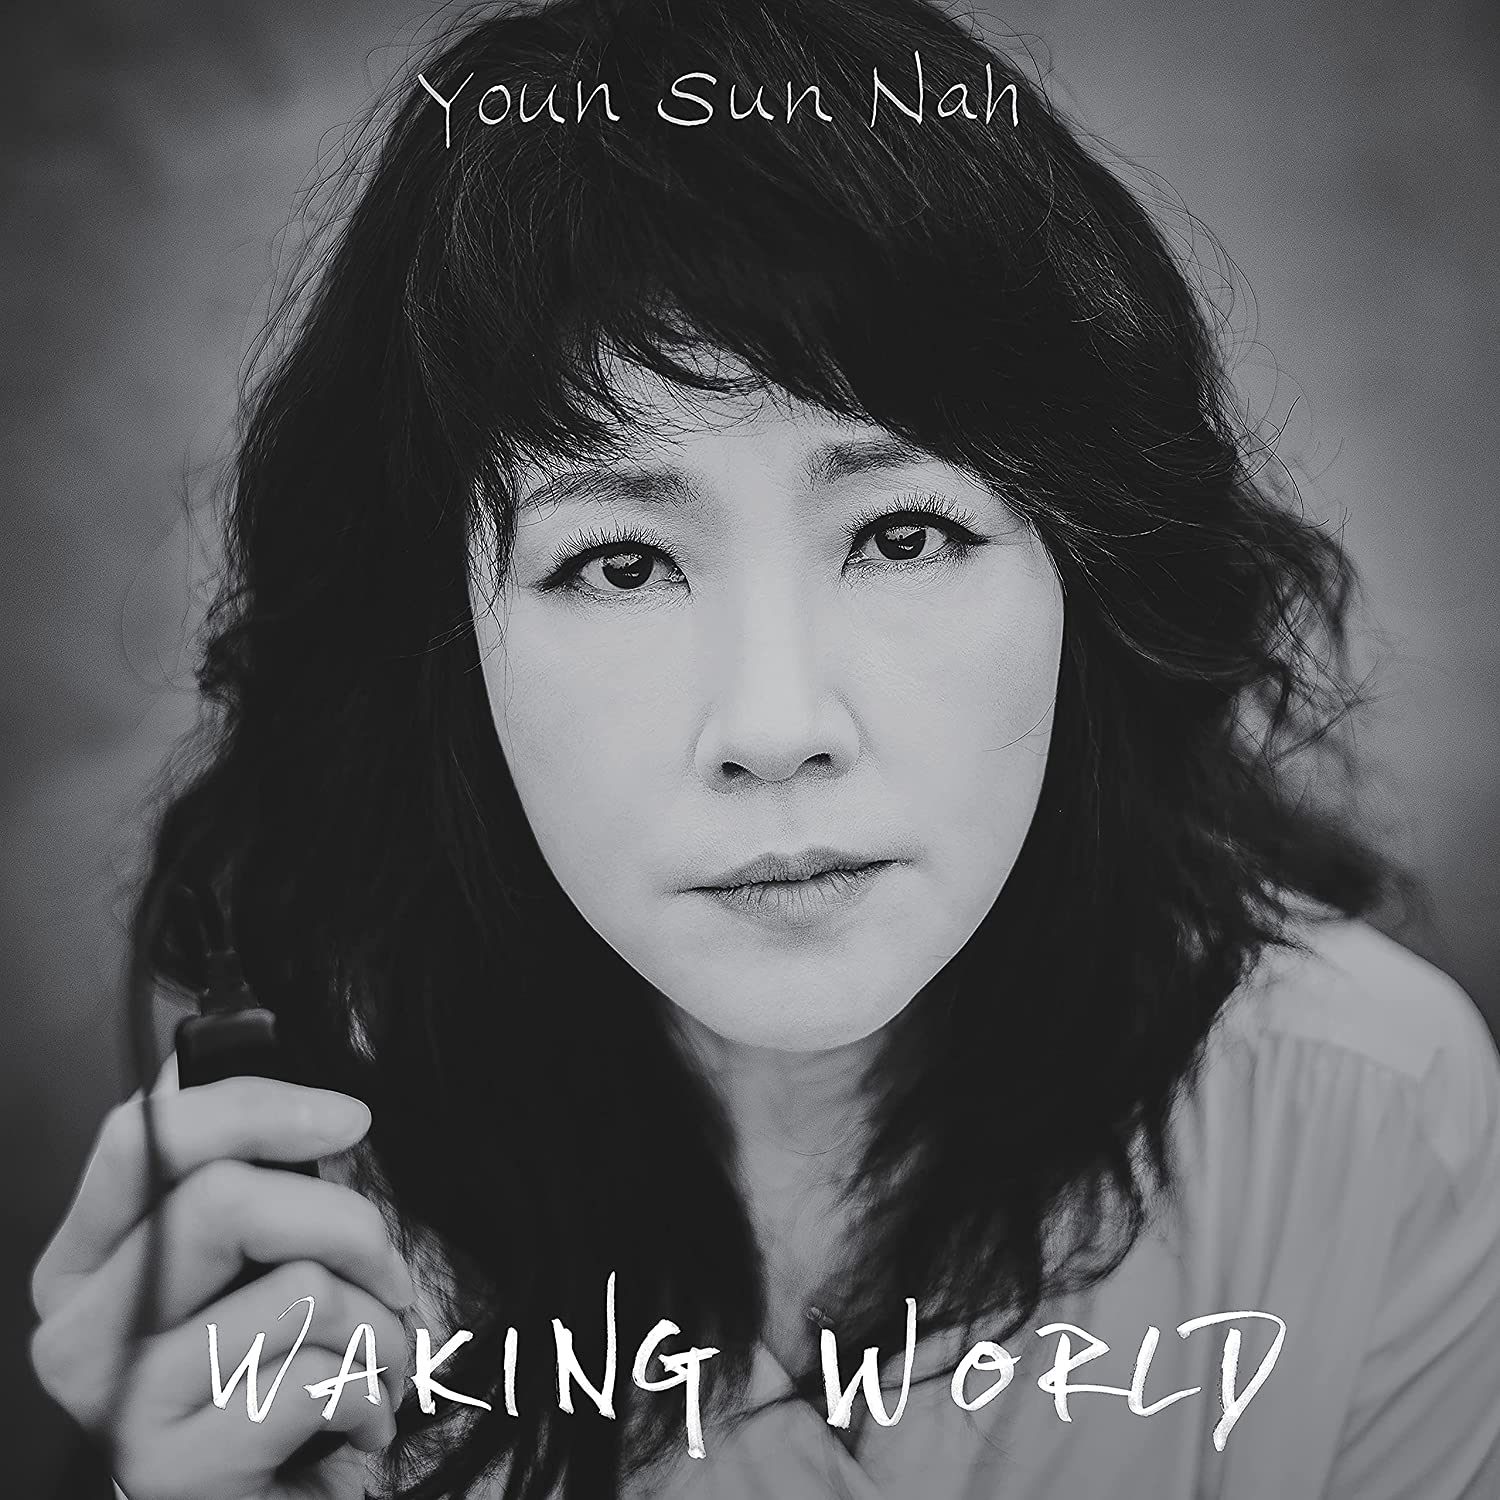 YOUN SUN NAH - Waking World cover 